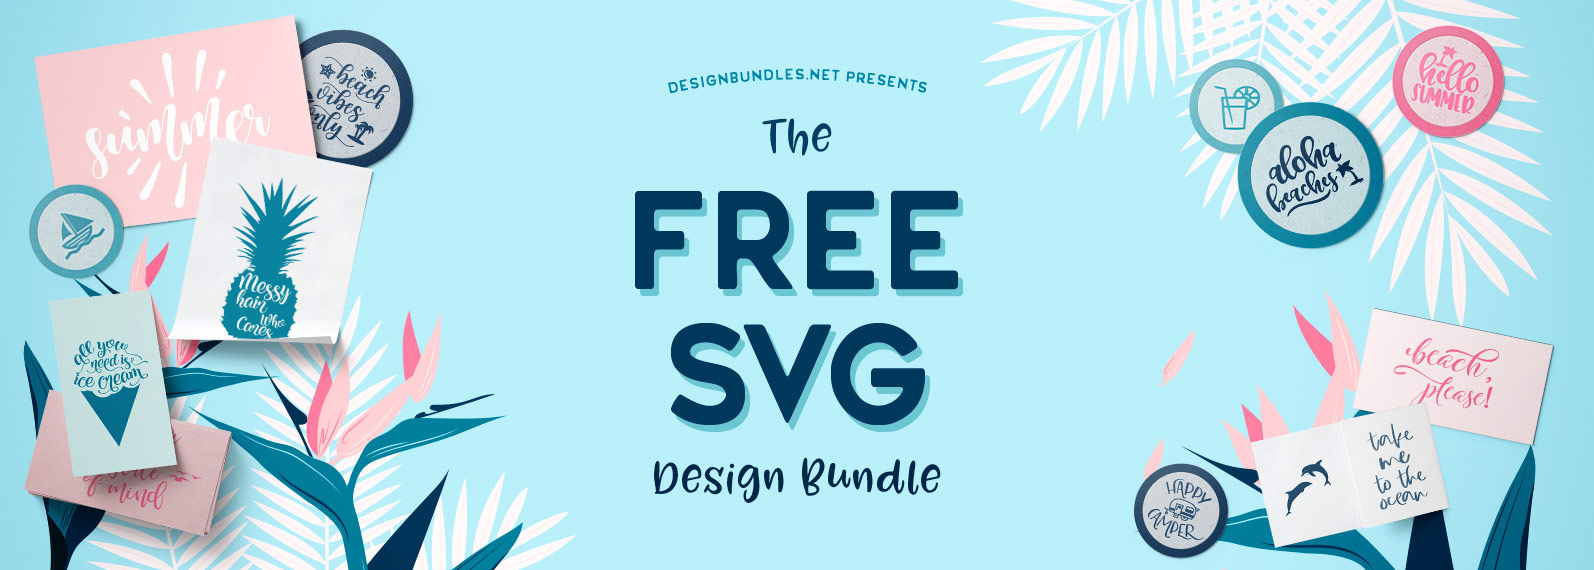 Download Sparkol Svg Bundle Free Download - Layered SVG Cut File